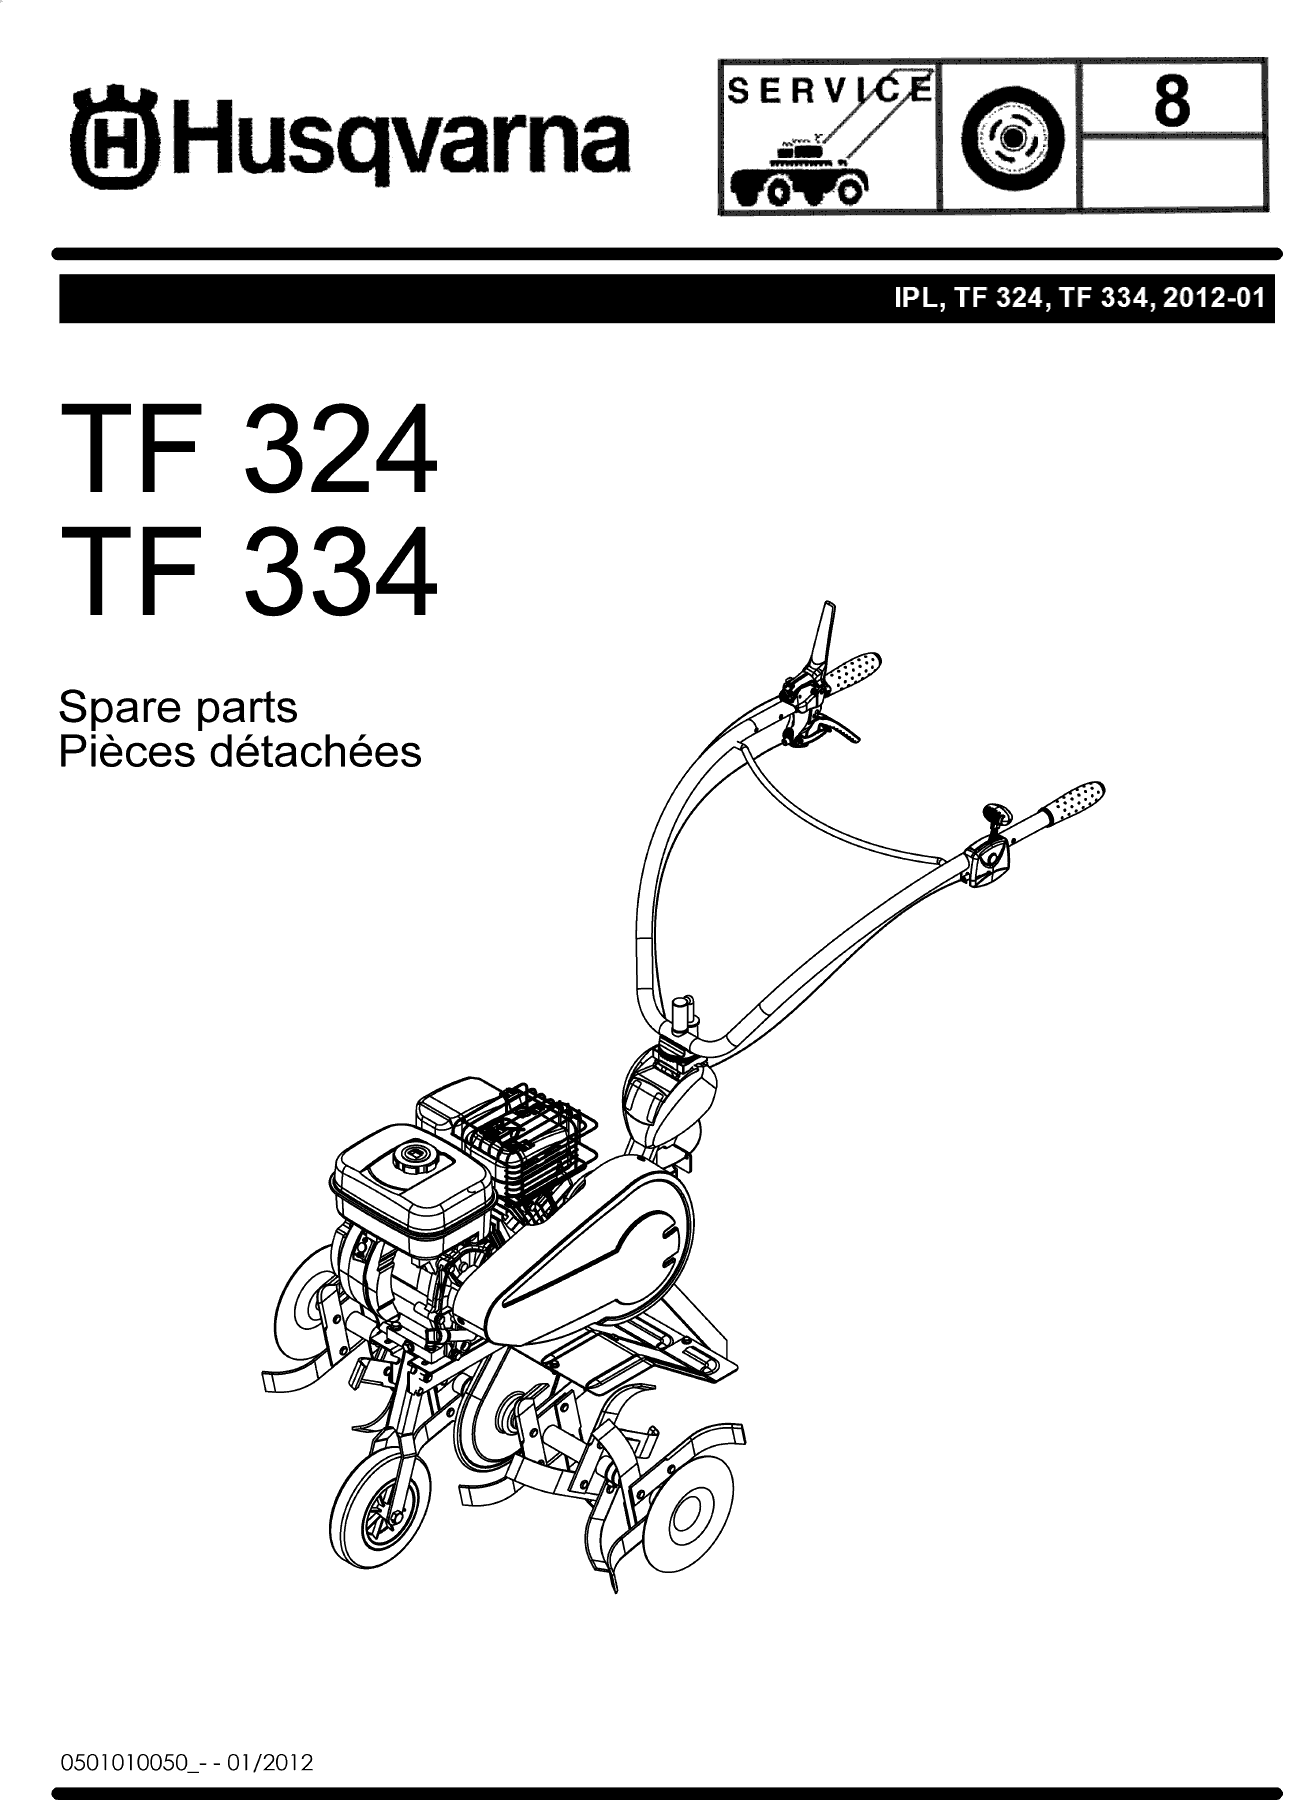 Культиватор TF324 (2012-01)